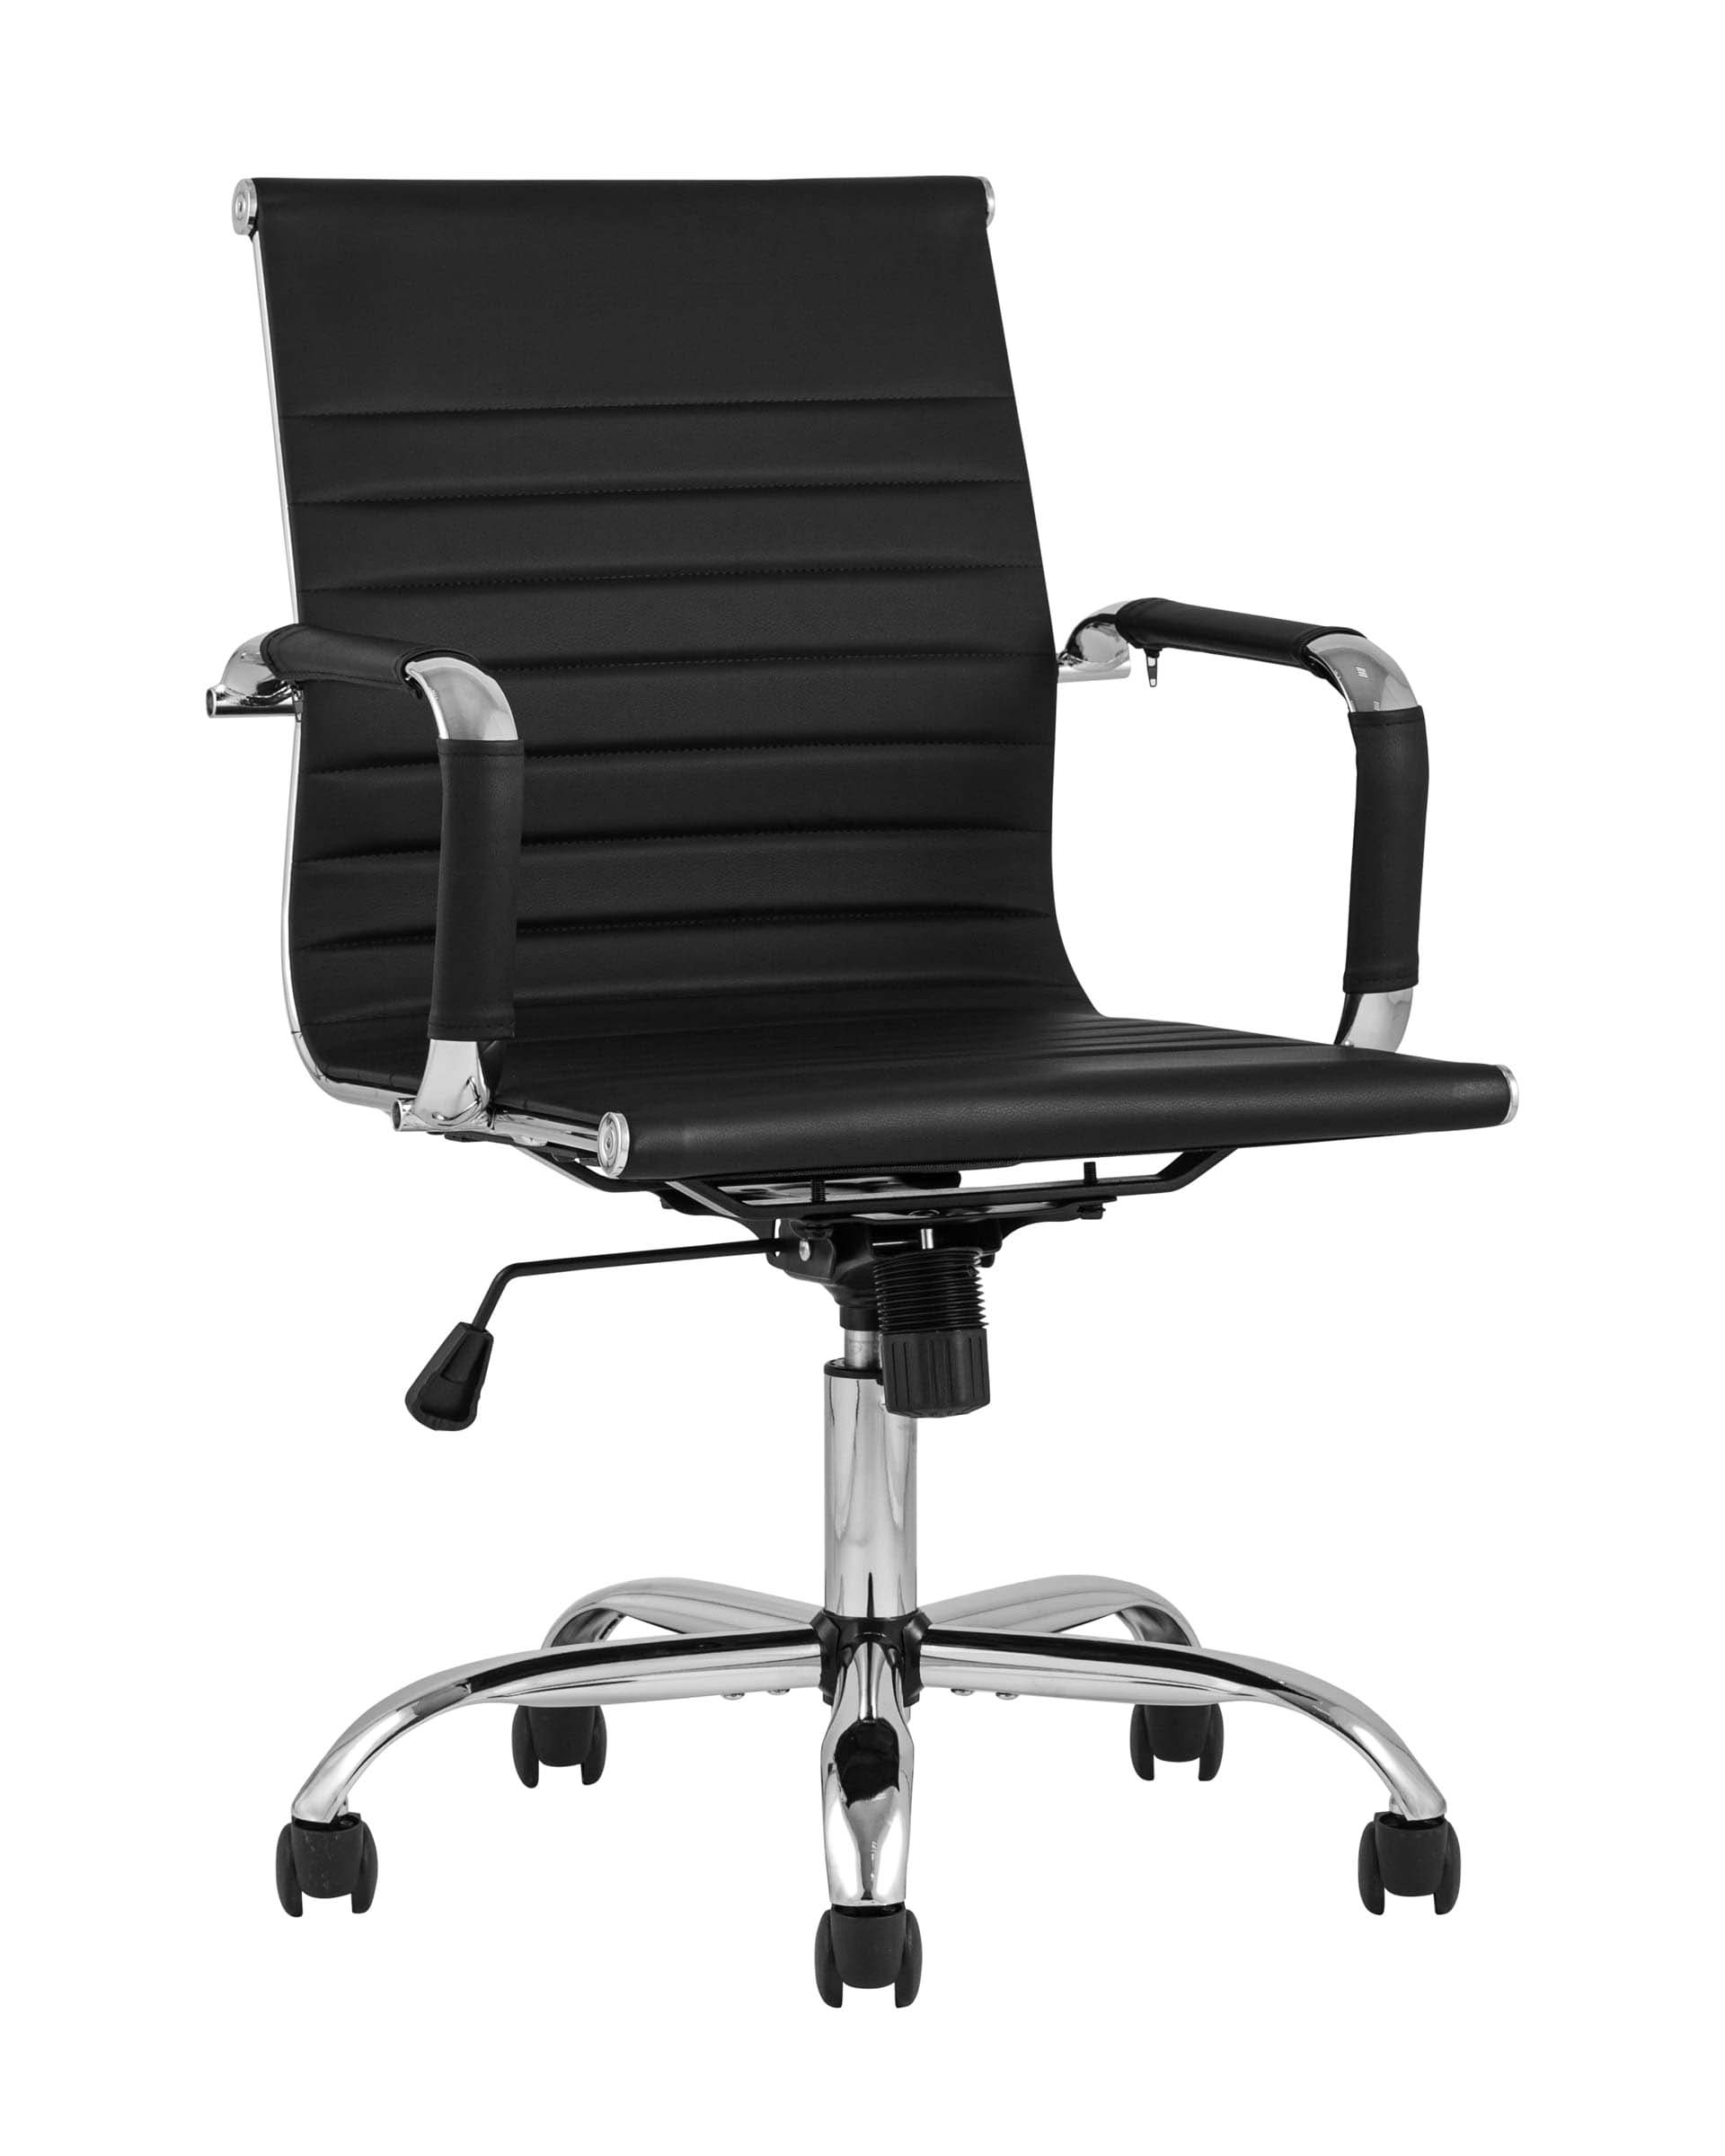 Компьютерное кресло TopChairs City S офисное черное в обивке из экокожи, механизм регулирования по высоте и качания